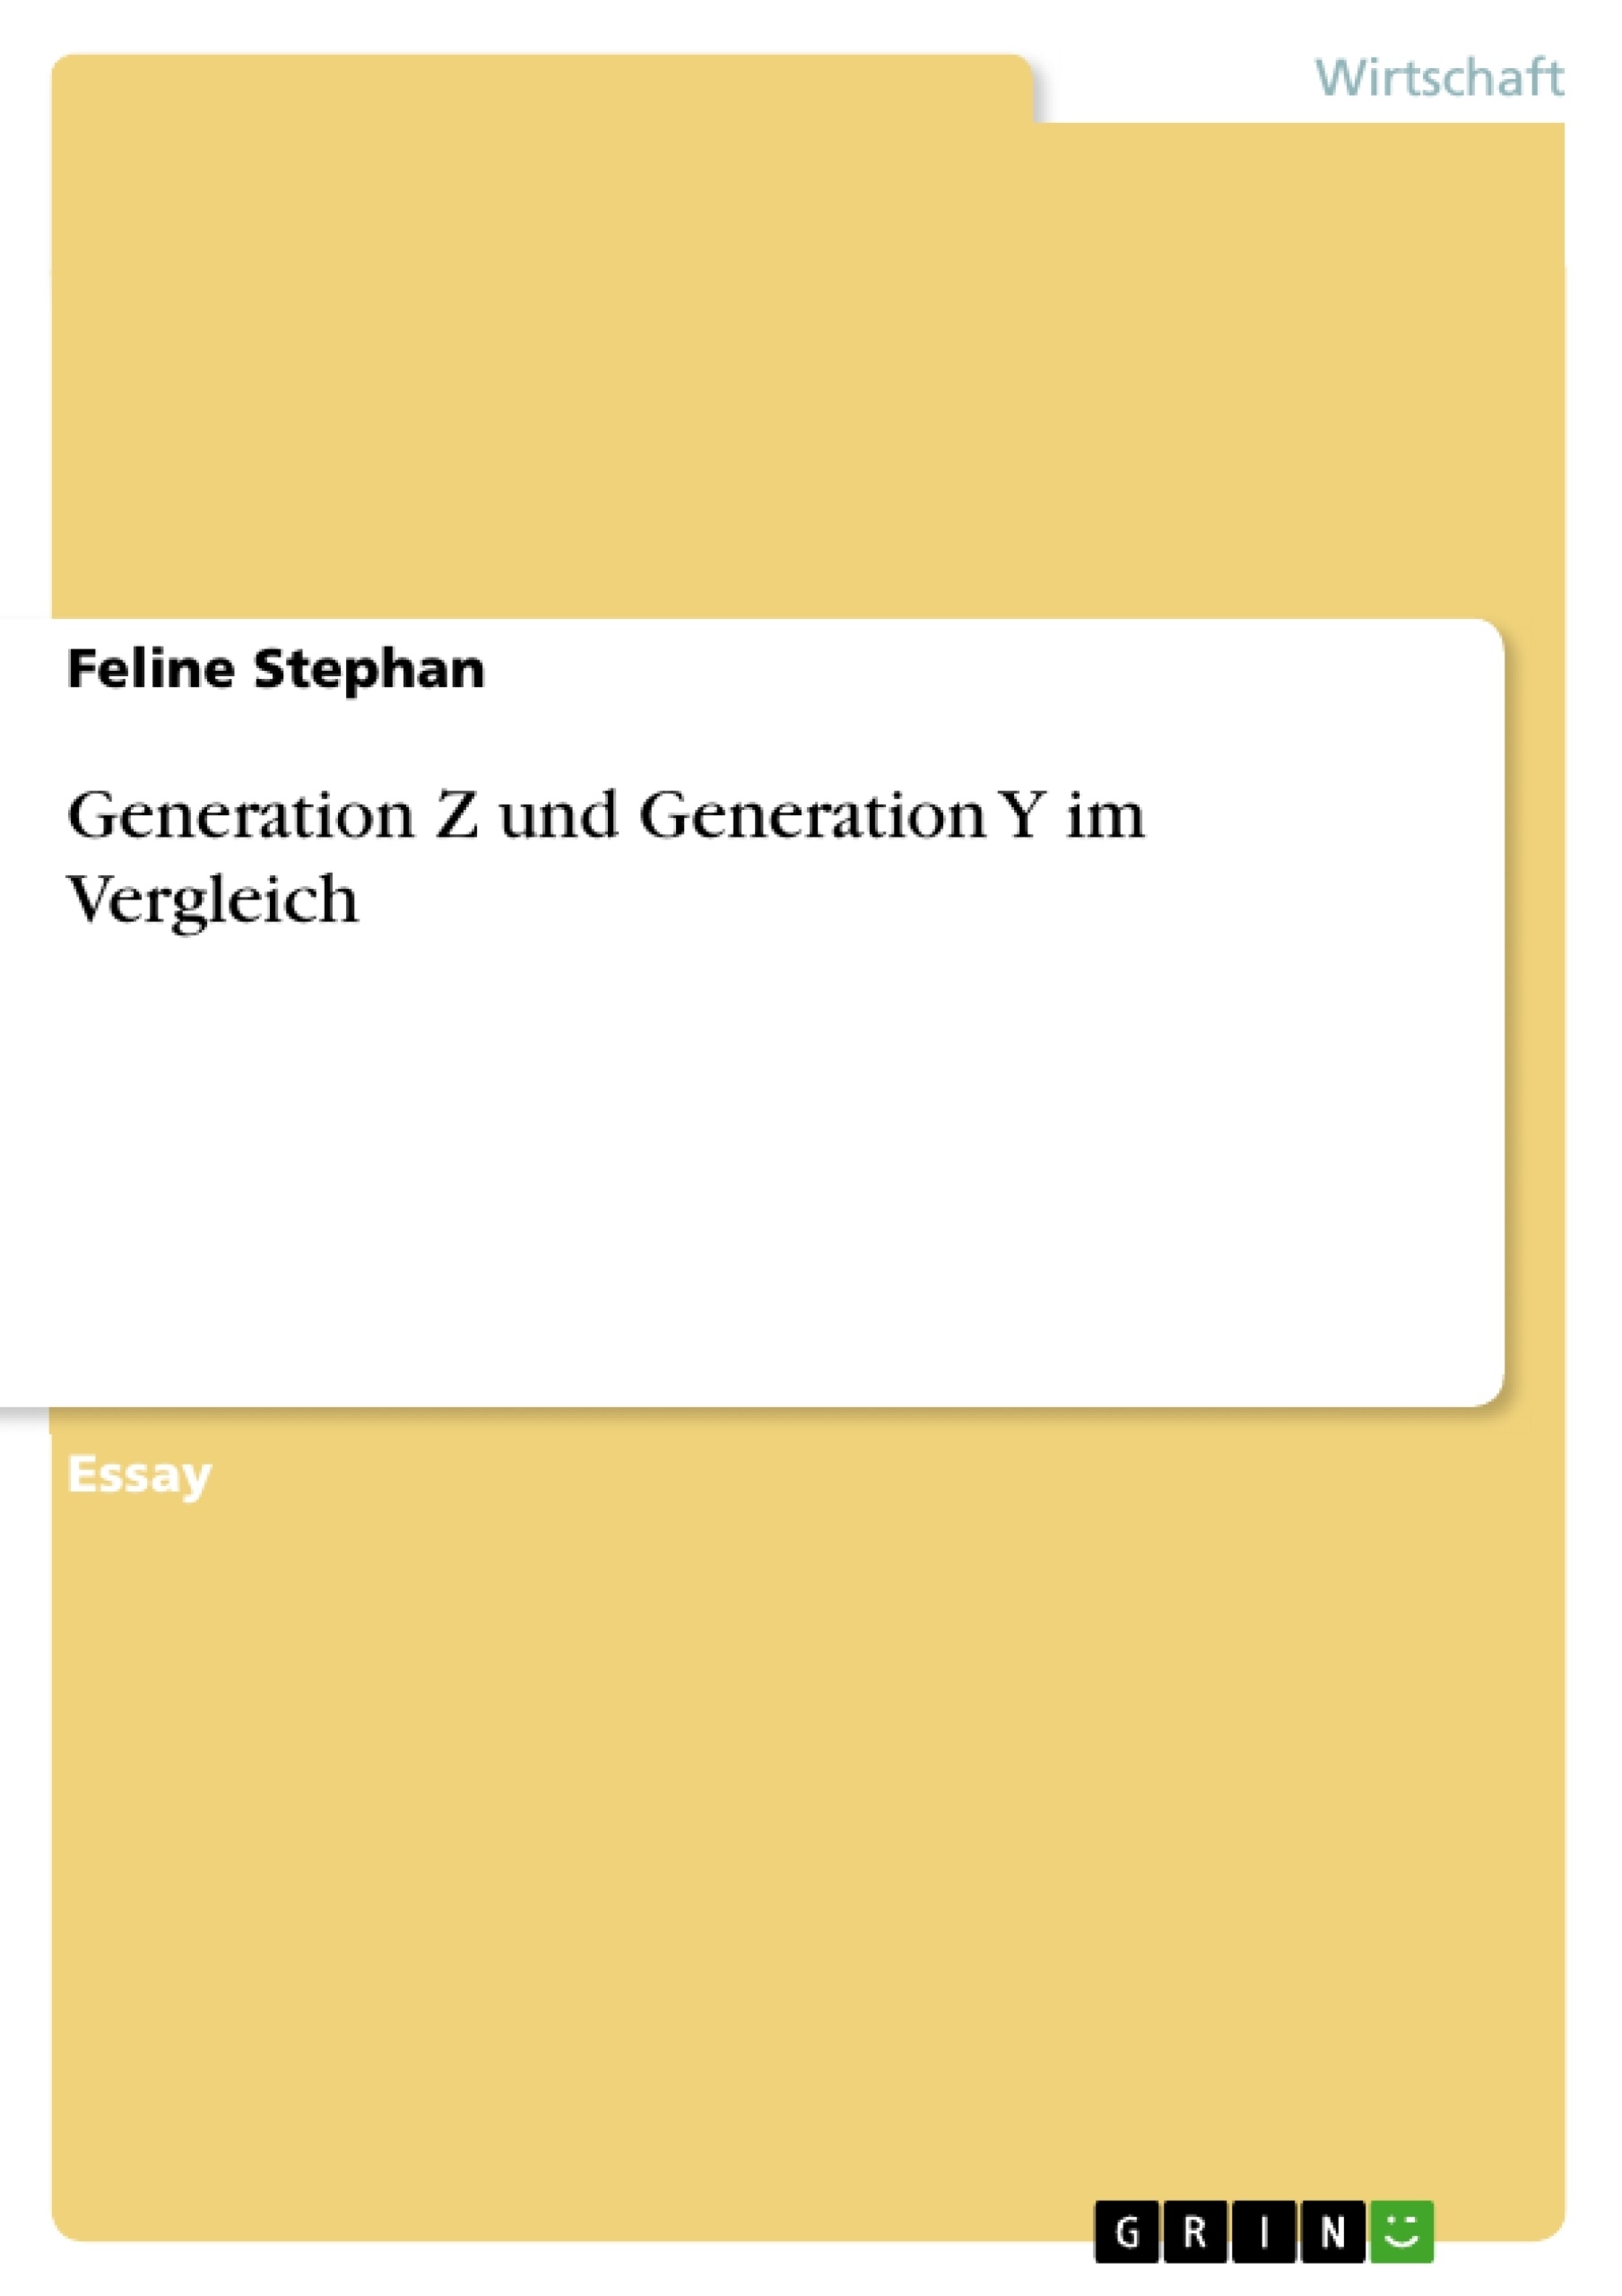 Título: Generation Z und Generation Y im Vergleich